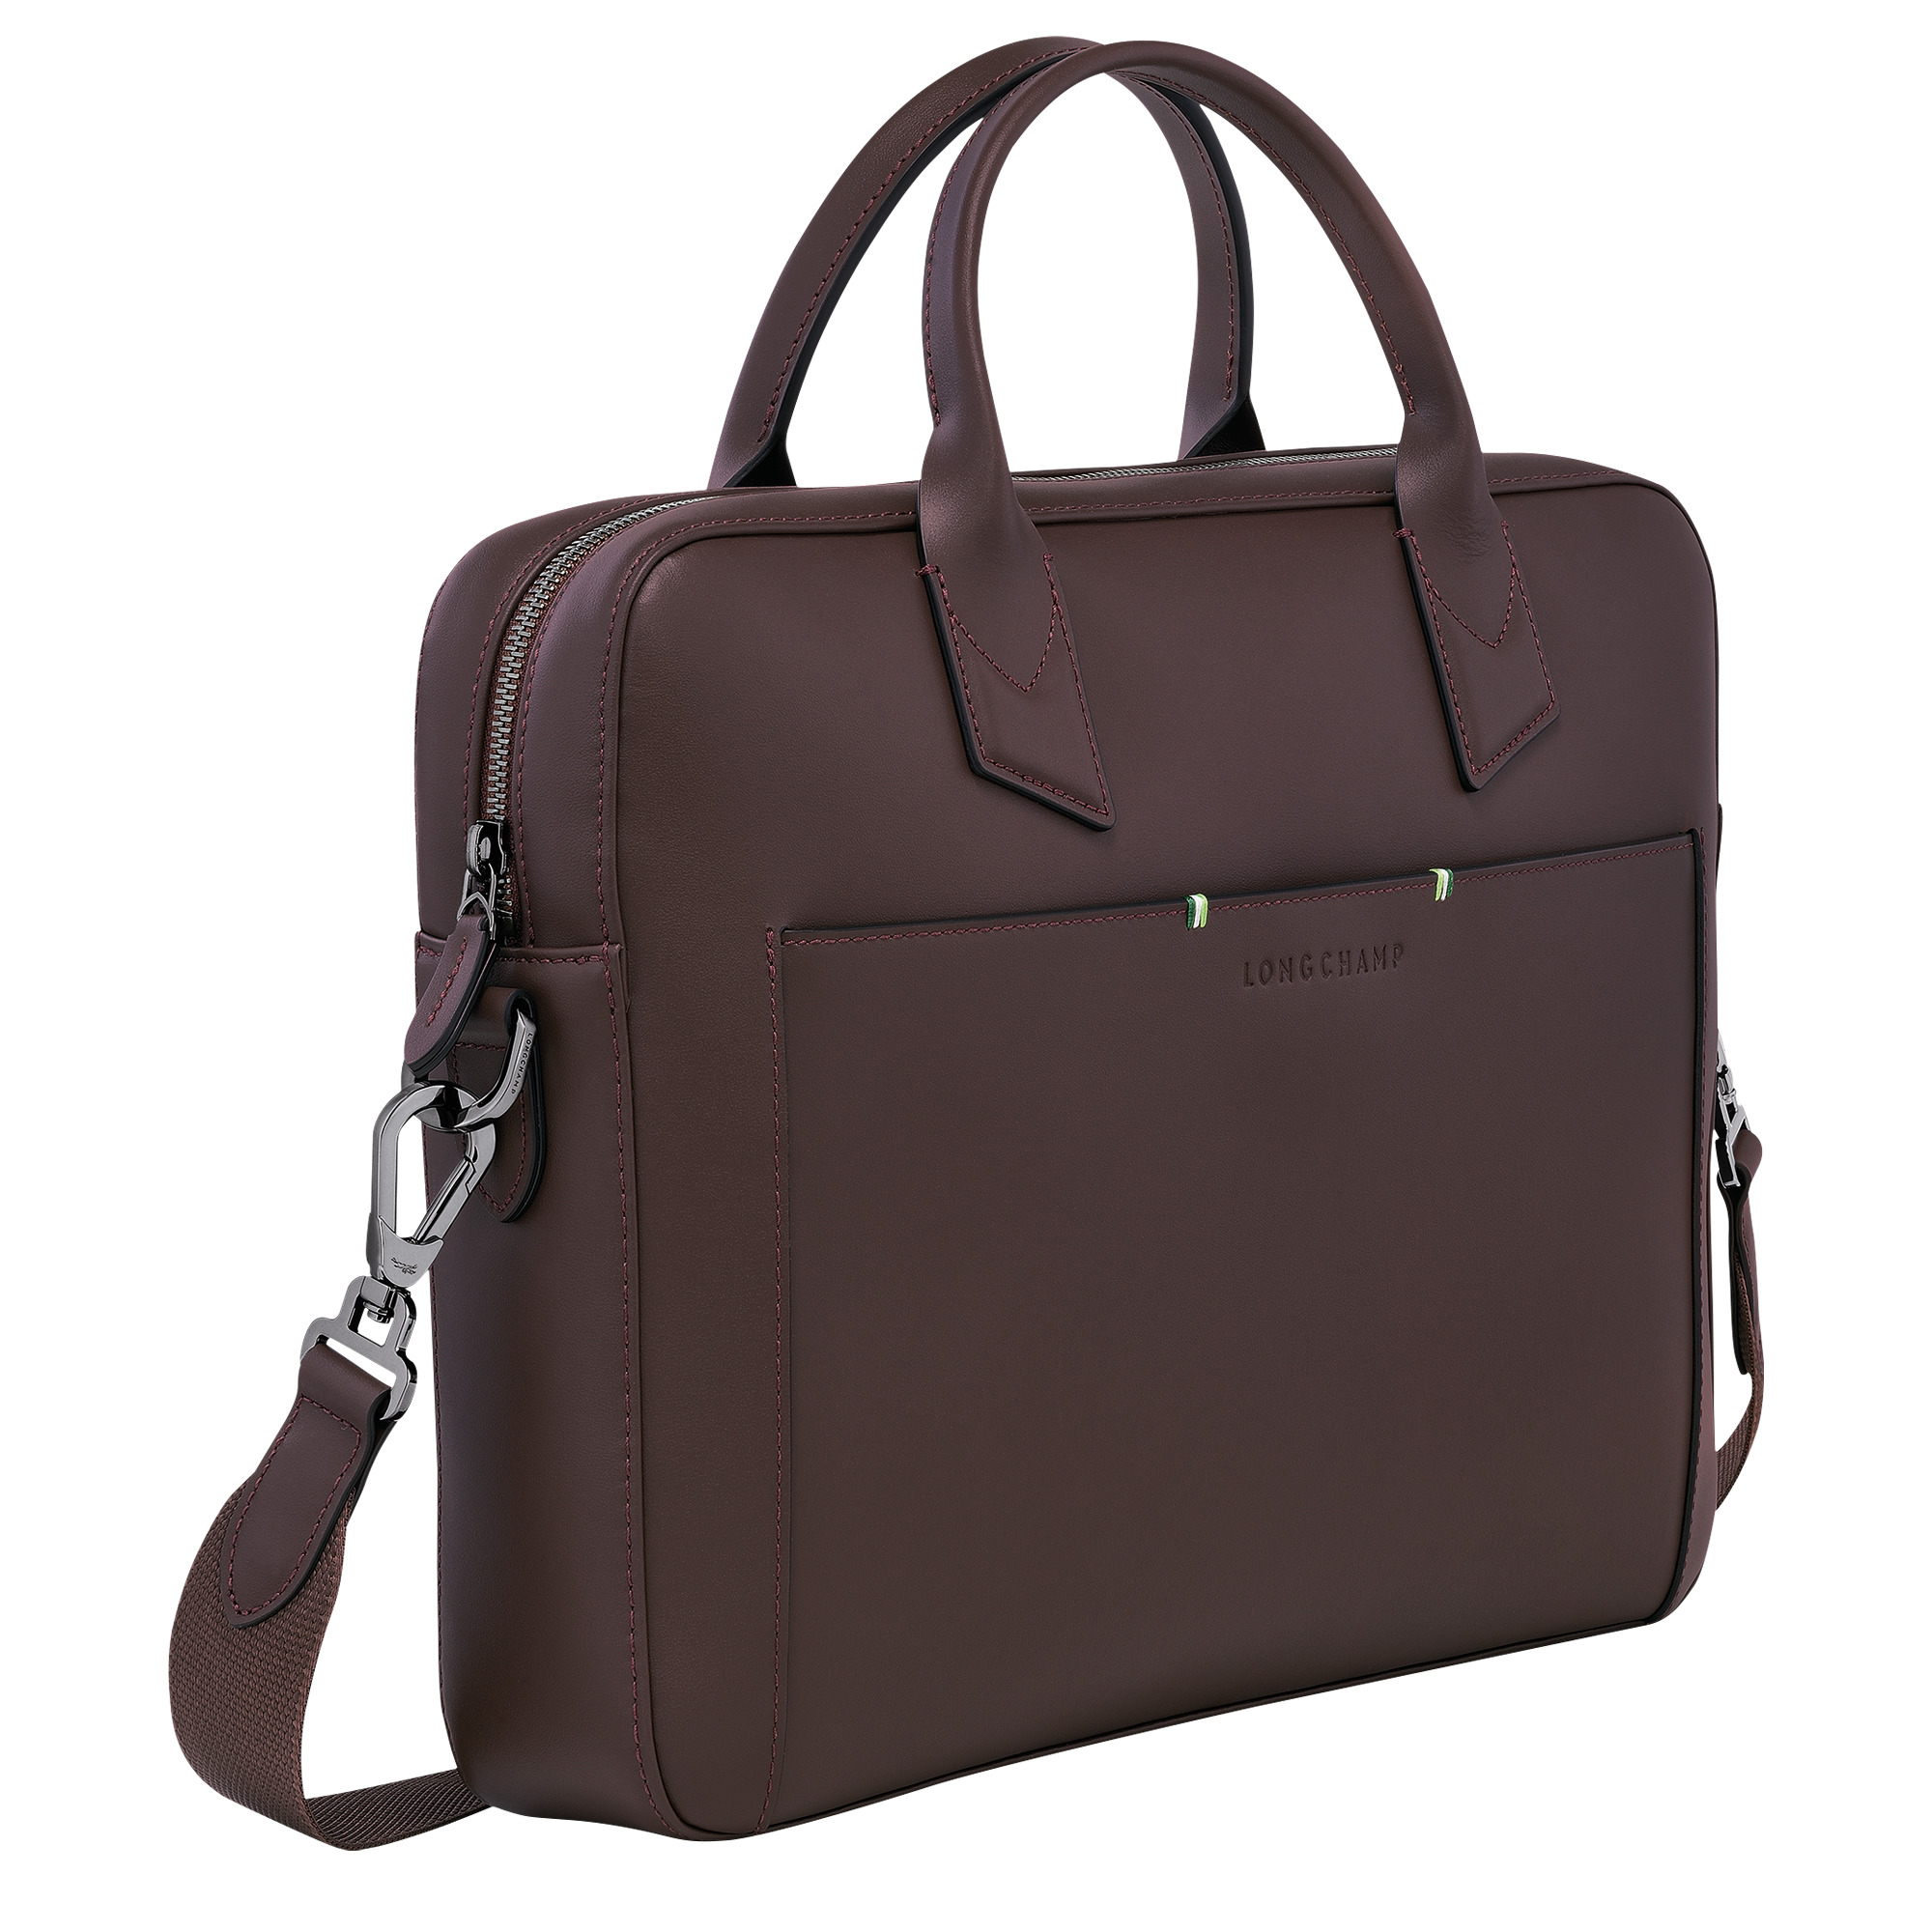 Longchamp sur Seine Briefcase Mocha - Leather - 2